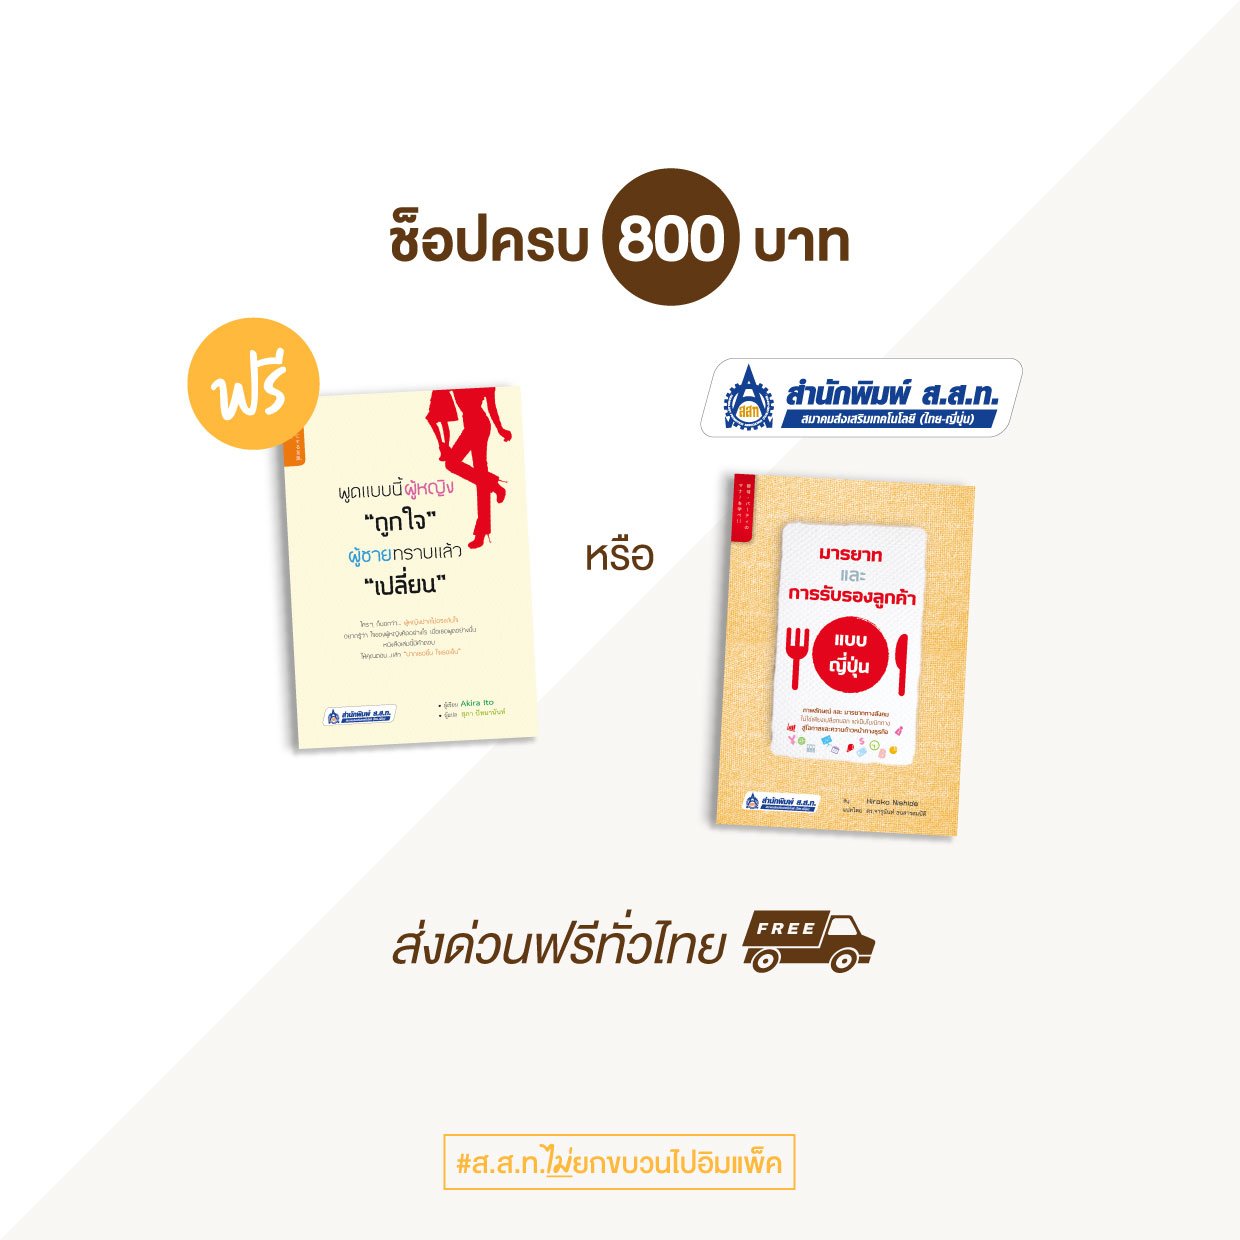 Book Expo - 800 baht